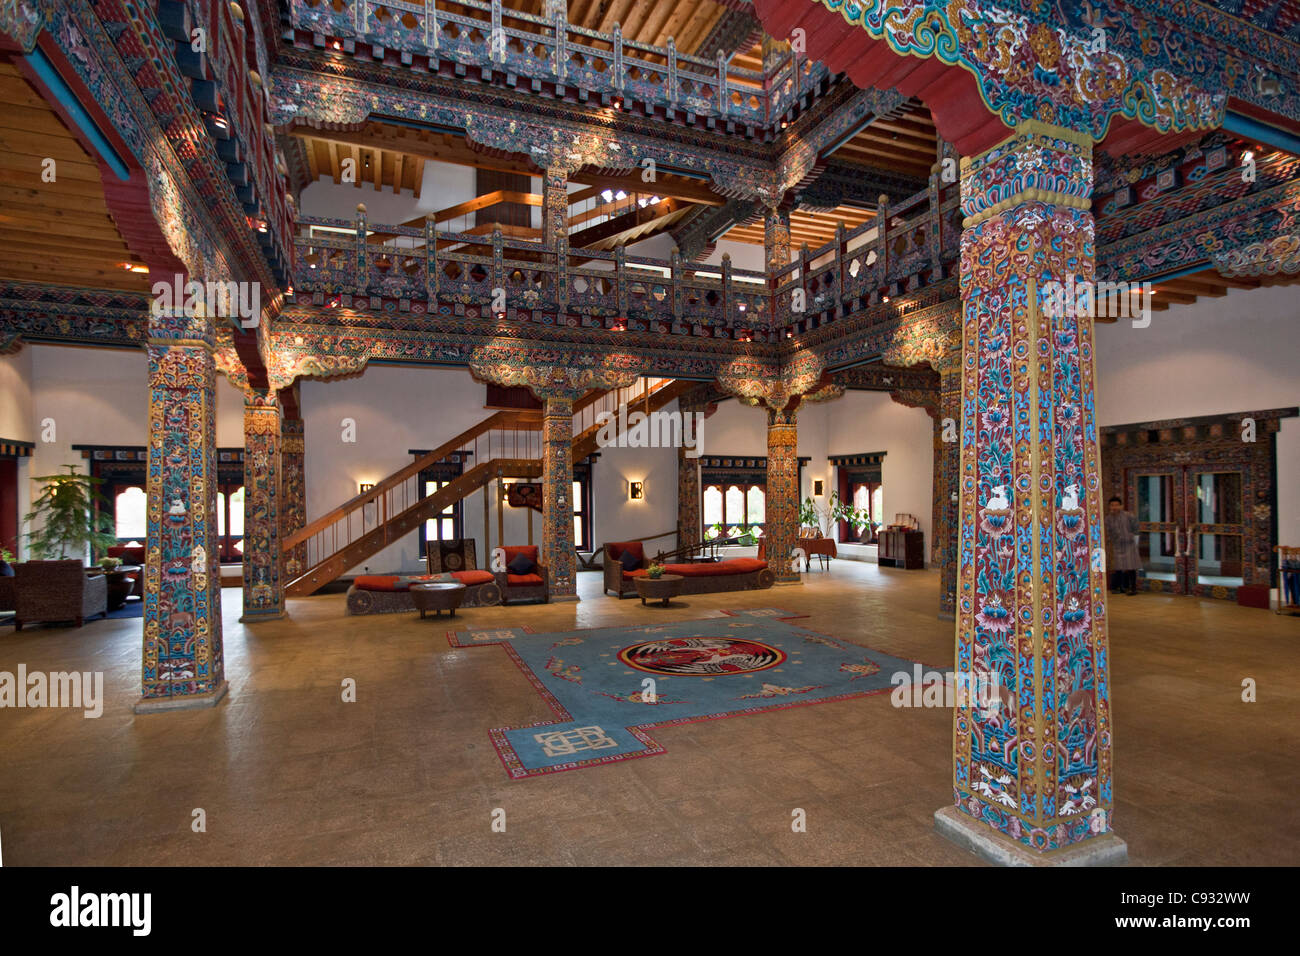 El ornamentado vestíbulo de entrada del Grand Hotel de lujo Zhiwa Ling, a ocho km del paro en el valle de Paro. Foto de stock